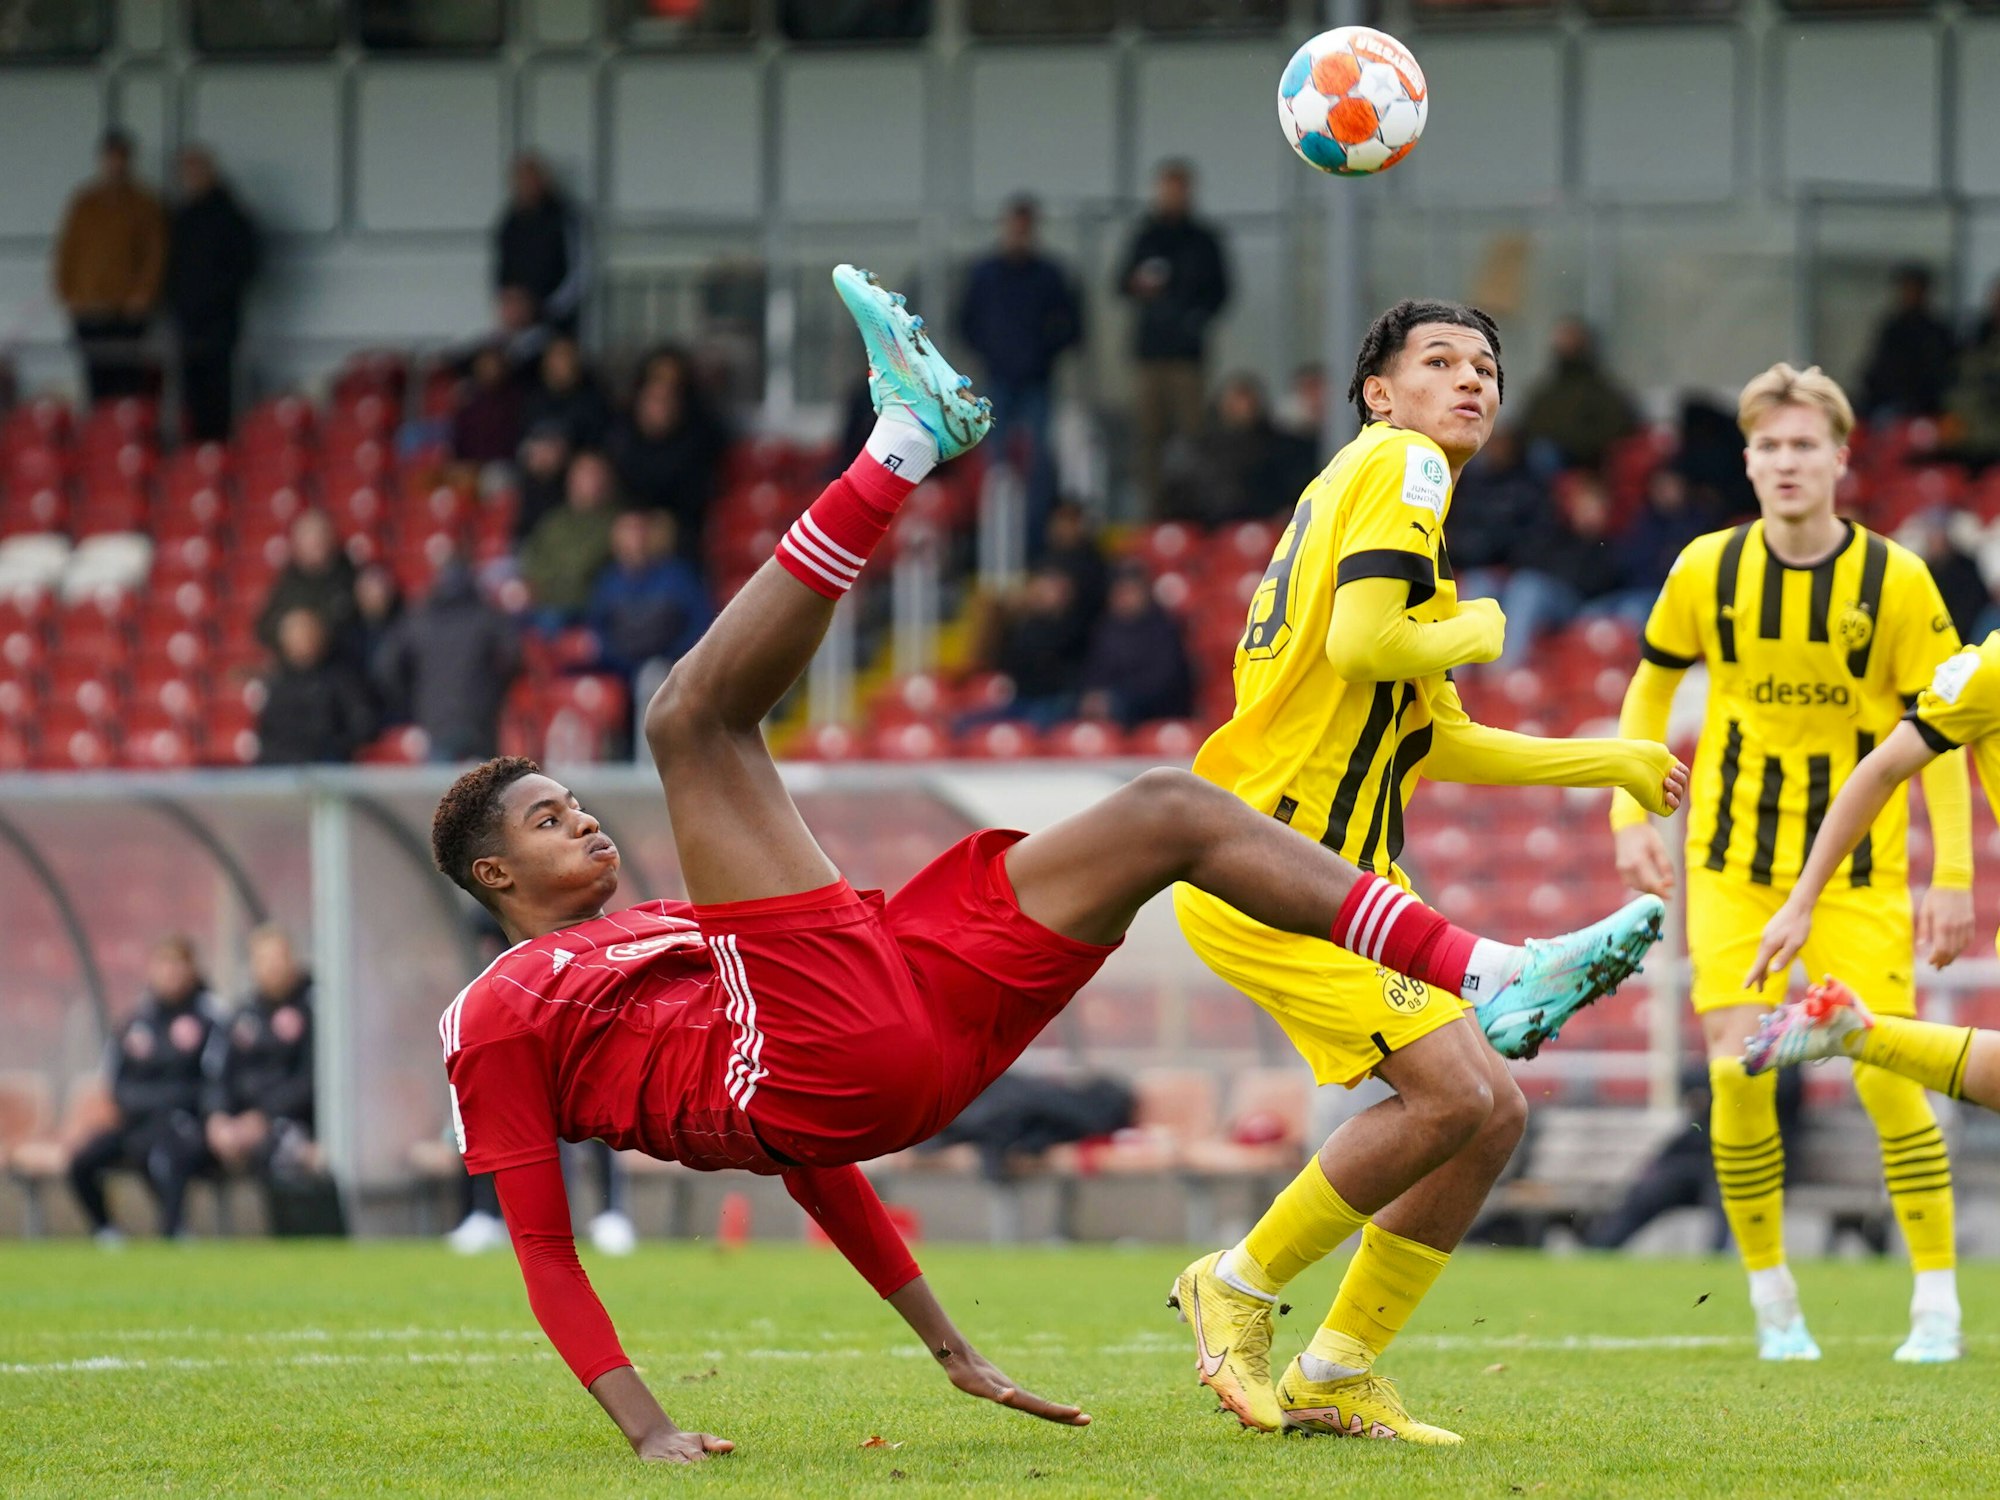 Kelven Frees setzt im Spiel gegen Borussia Dortmund zum Fallrückzieher an. Er liegt in der Luft.